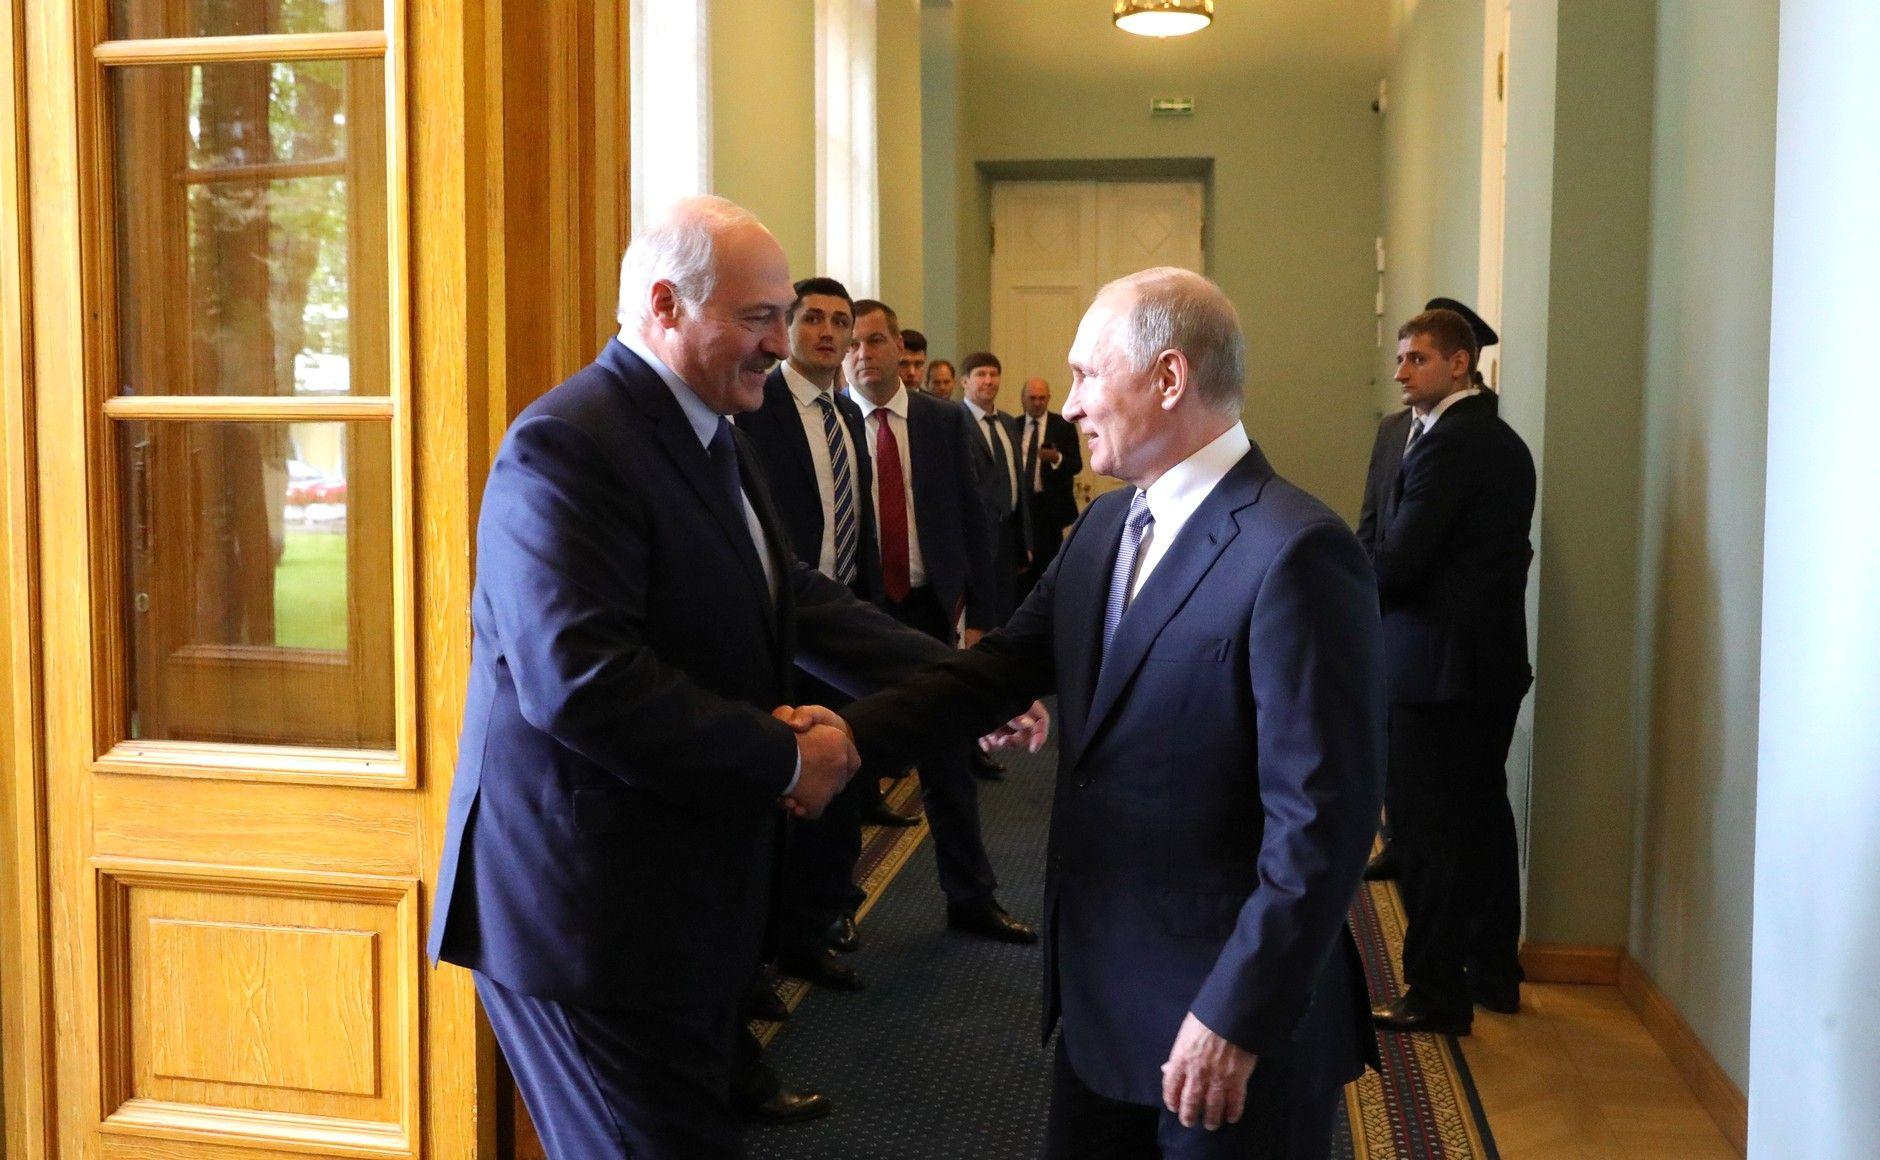 Лукашенко предложил утвердить программу интеграции Беларуси и России